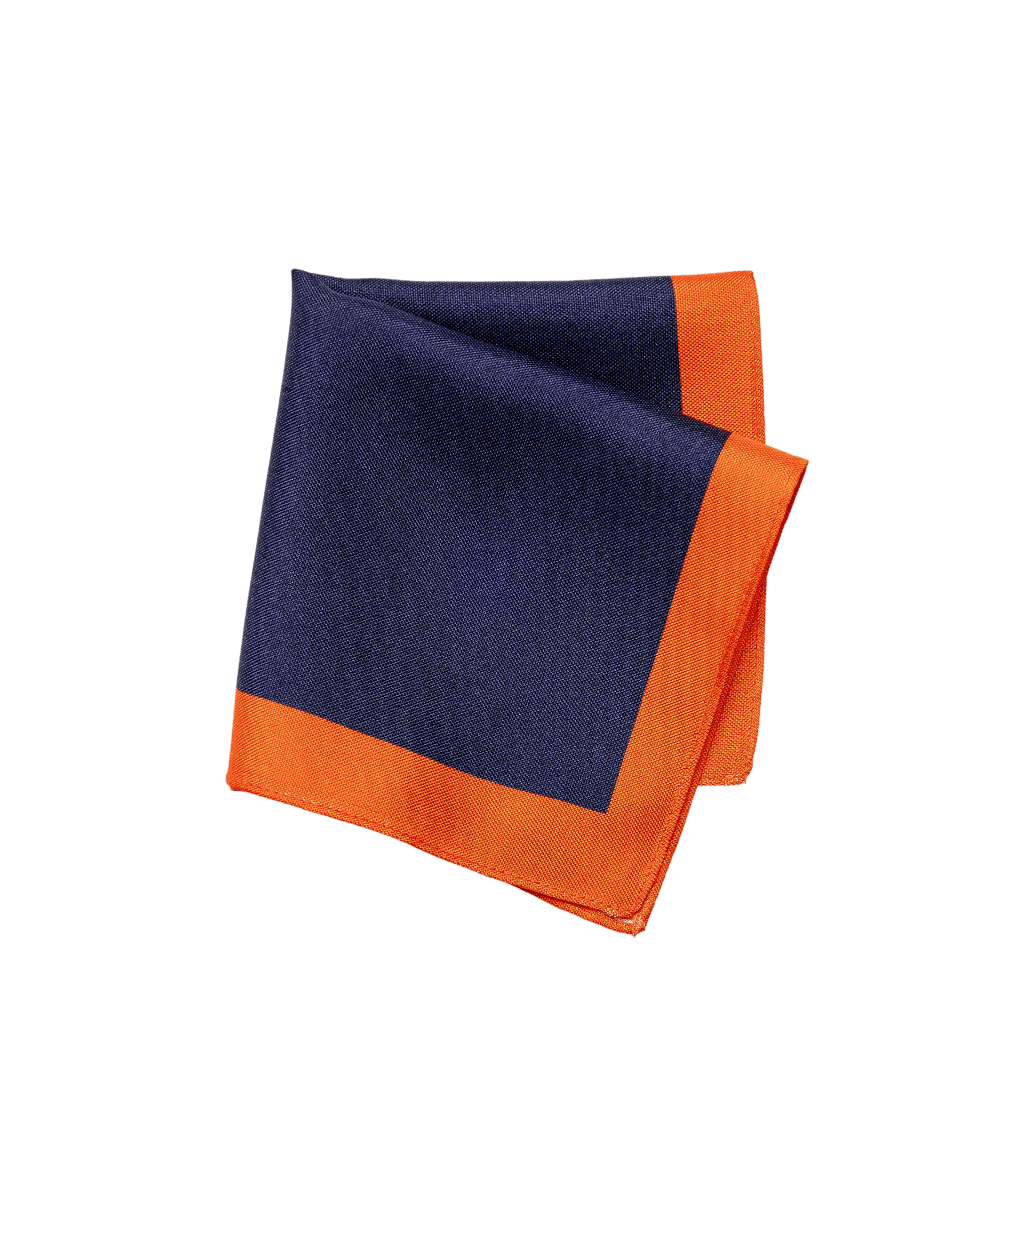  Sötétkék-narancs színű selyem díszzsebkendő